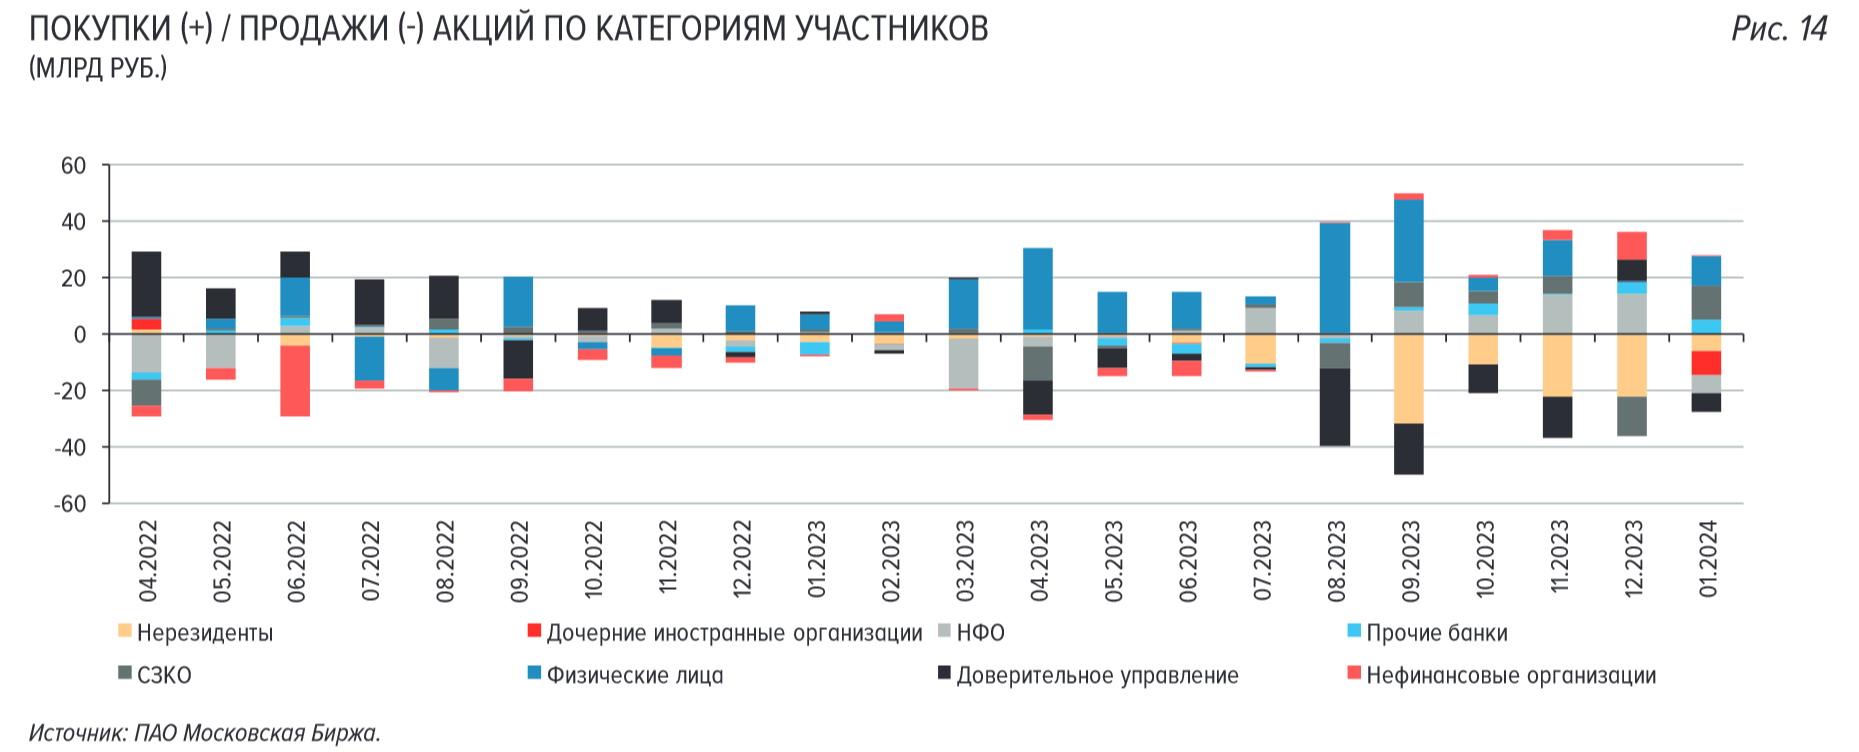 Продажи акций на российском рынке по категориям участников